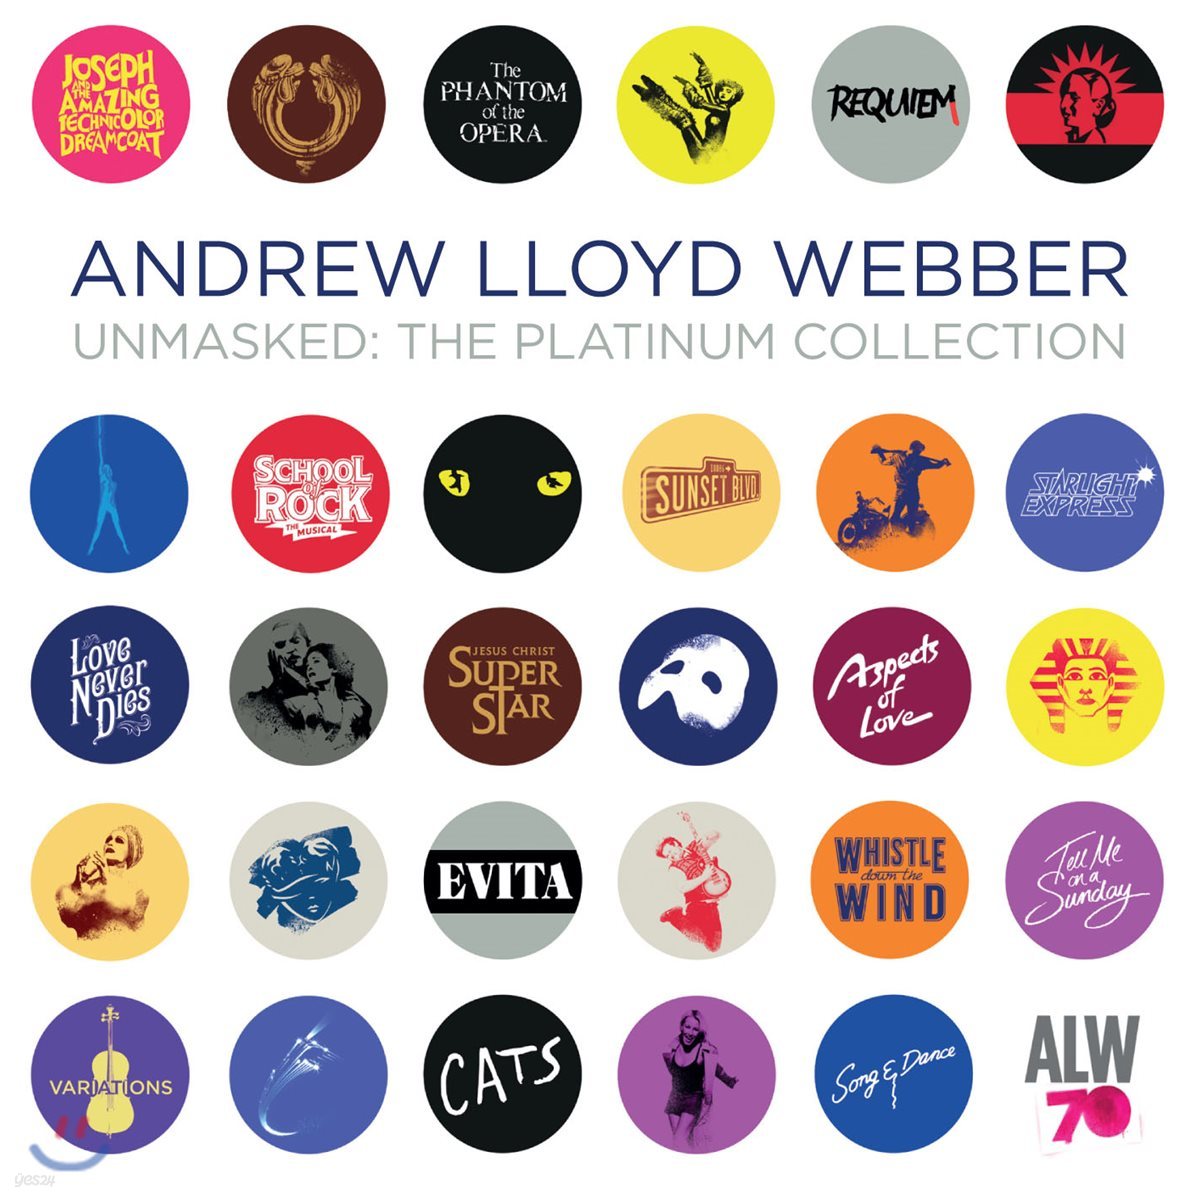 앤드류 로이드 웨버 뮤지컬 음악 모음집 (Andrew Lloyd Webber - Unmasked: The Platinum Collection )